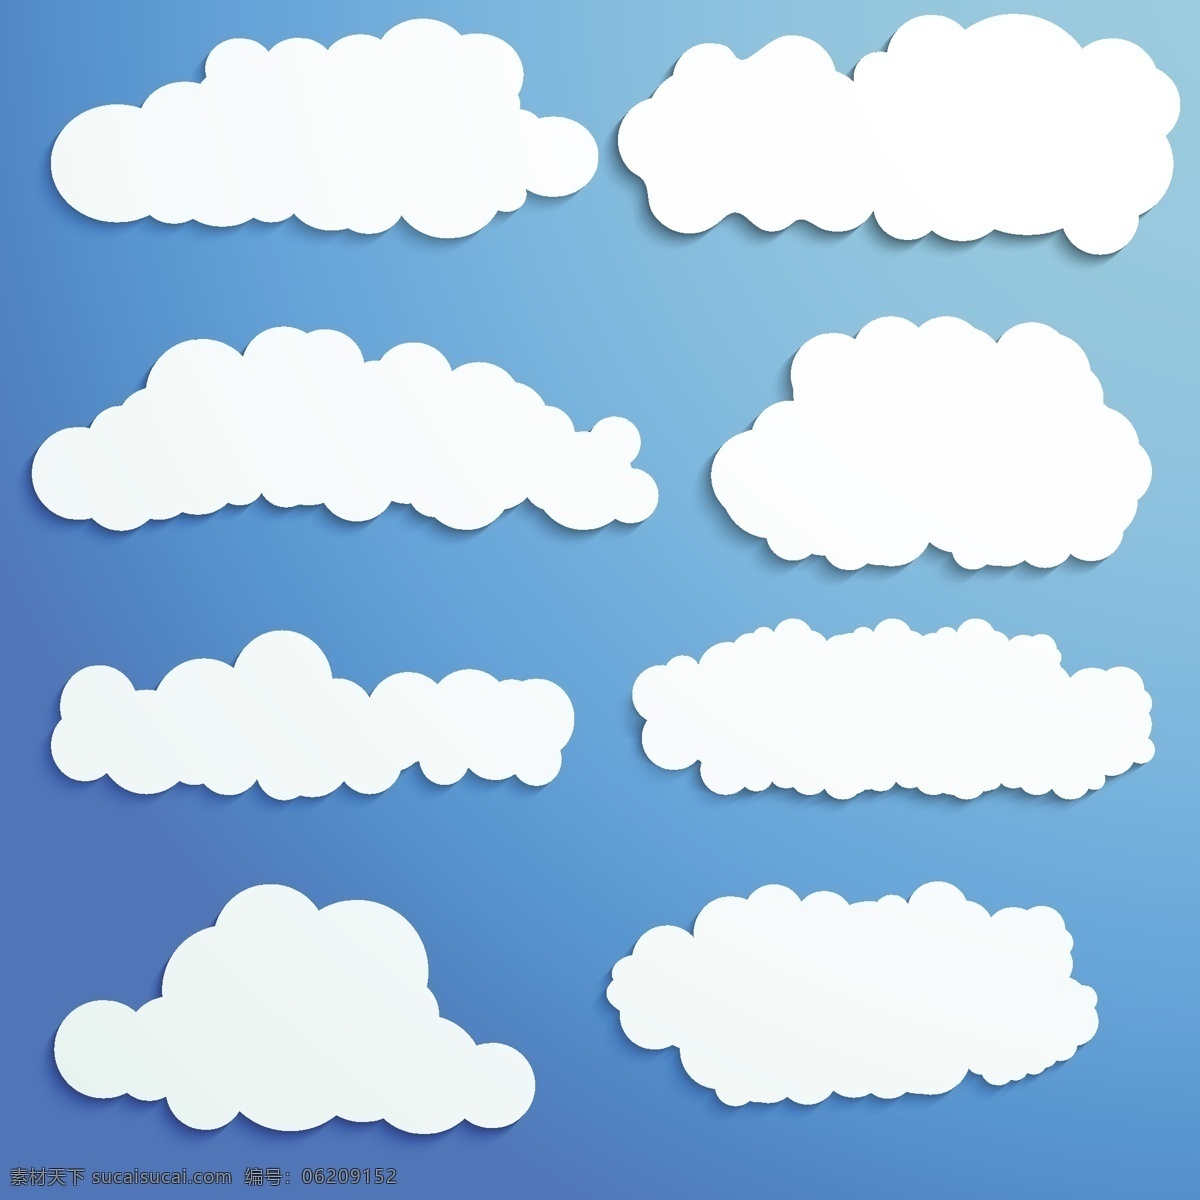 卡通 蓝天 白云 背景 云主题设计 各种运动图形 贴纸式白云 生活百科 矢量素材 白色